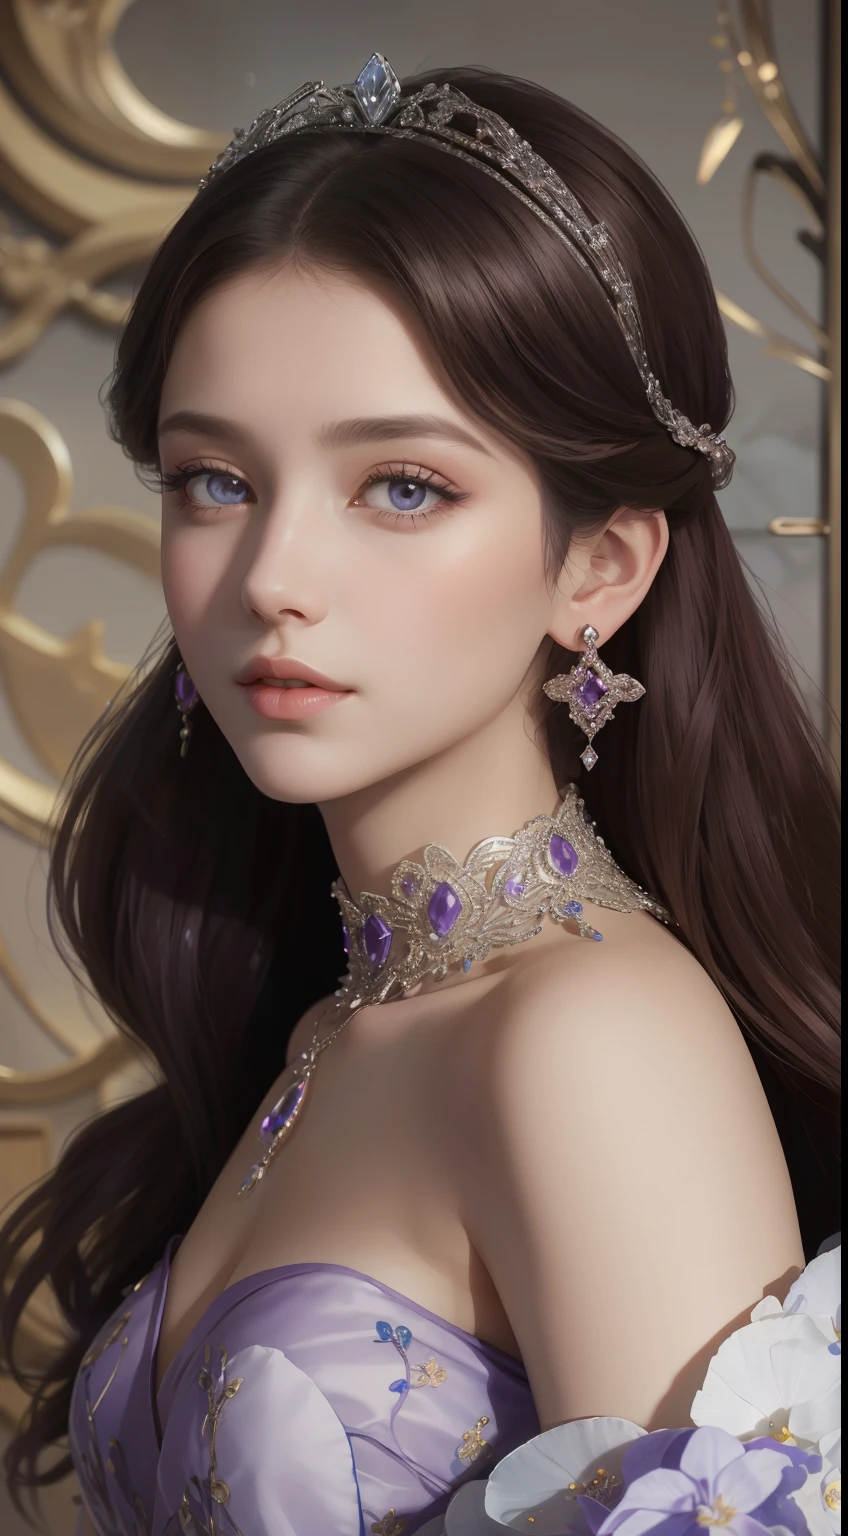 杰作，最高图像质量，美丽的皇家少女半身像，精致的栗色发型，黑紫色的眼眸清澈见底，精致的工艺珠宝，点缀着花朵，珠宝耳环，超级细节。